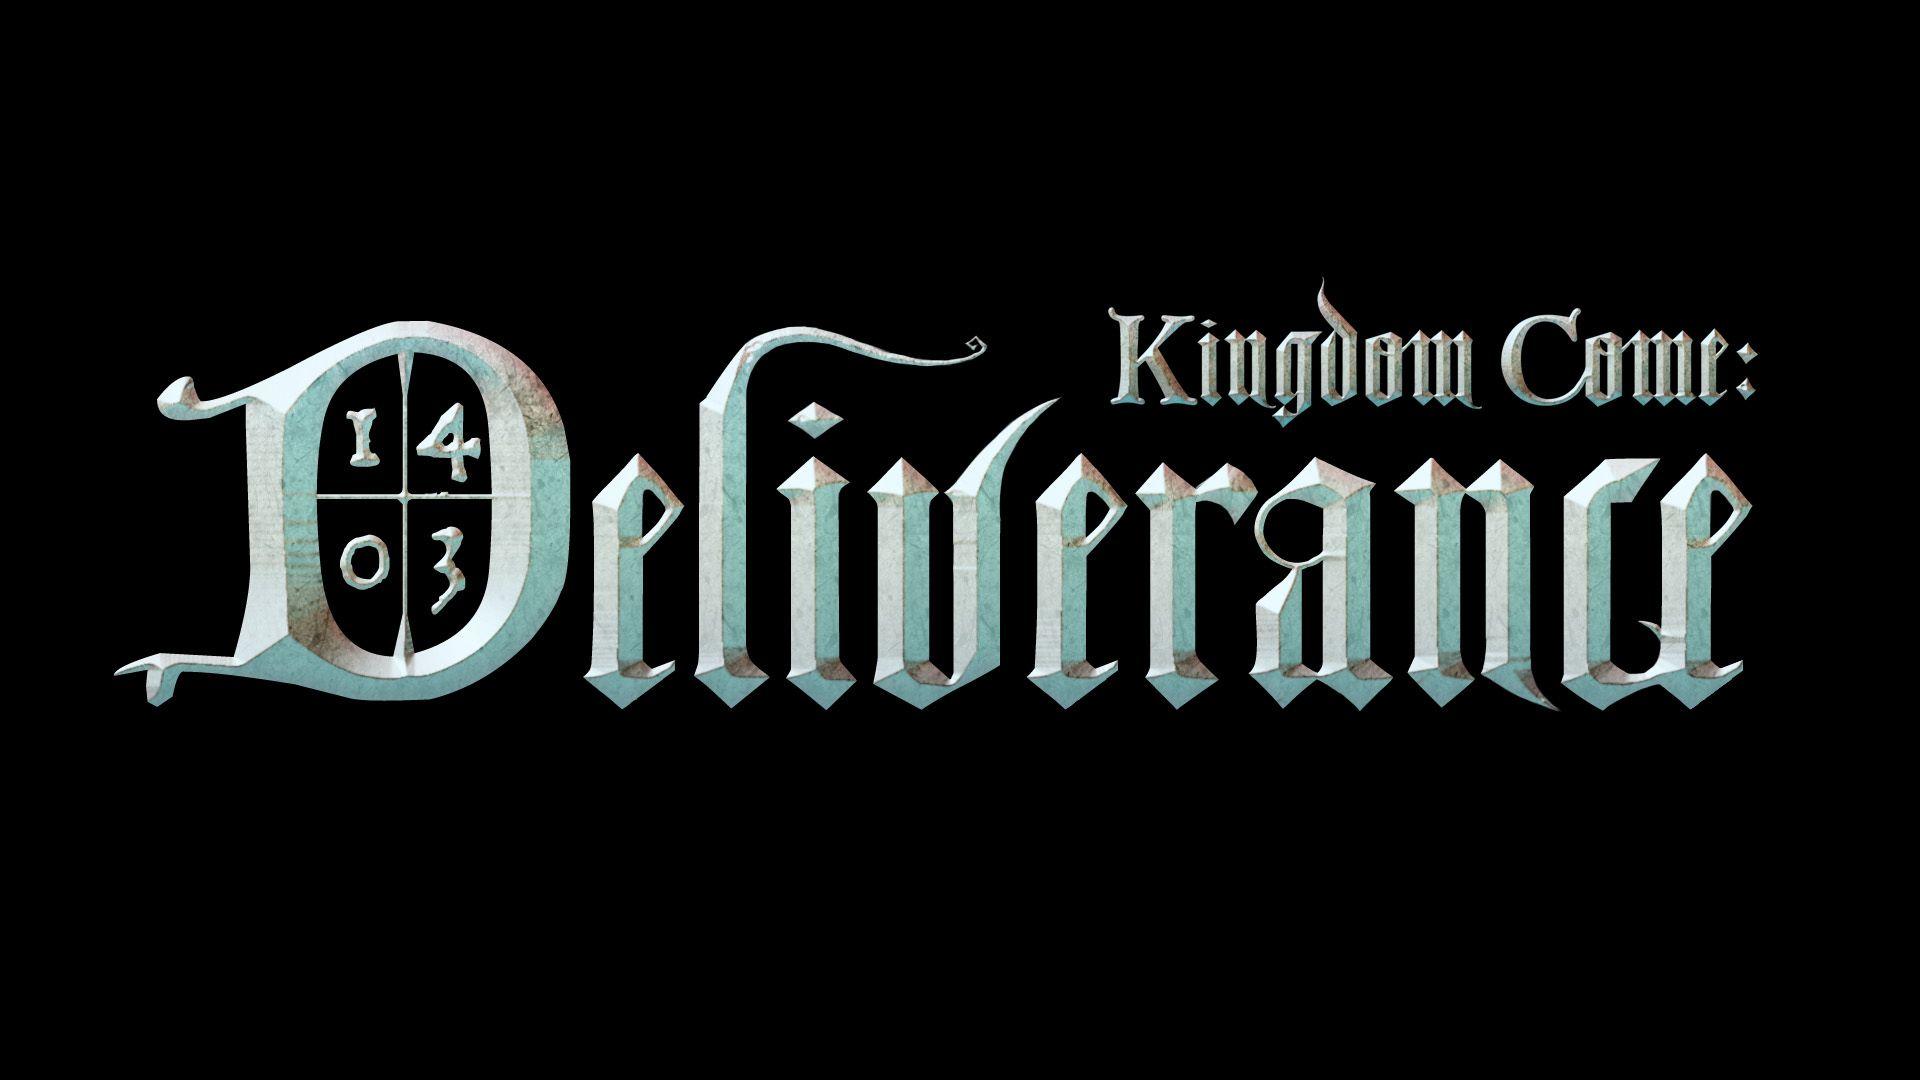 Download Wallpaper 1920x1080 Kingdom come, Deliverance, 2016 Full